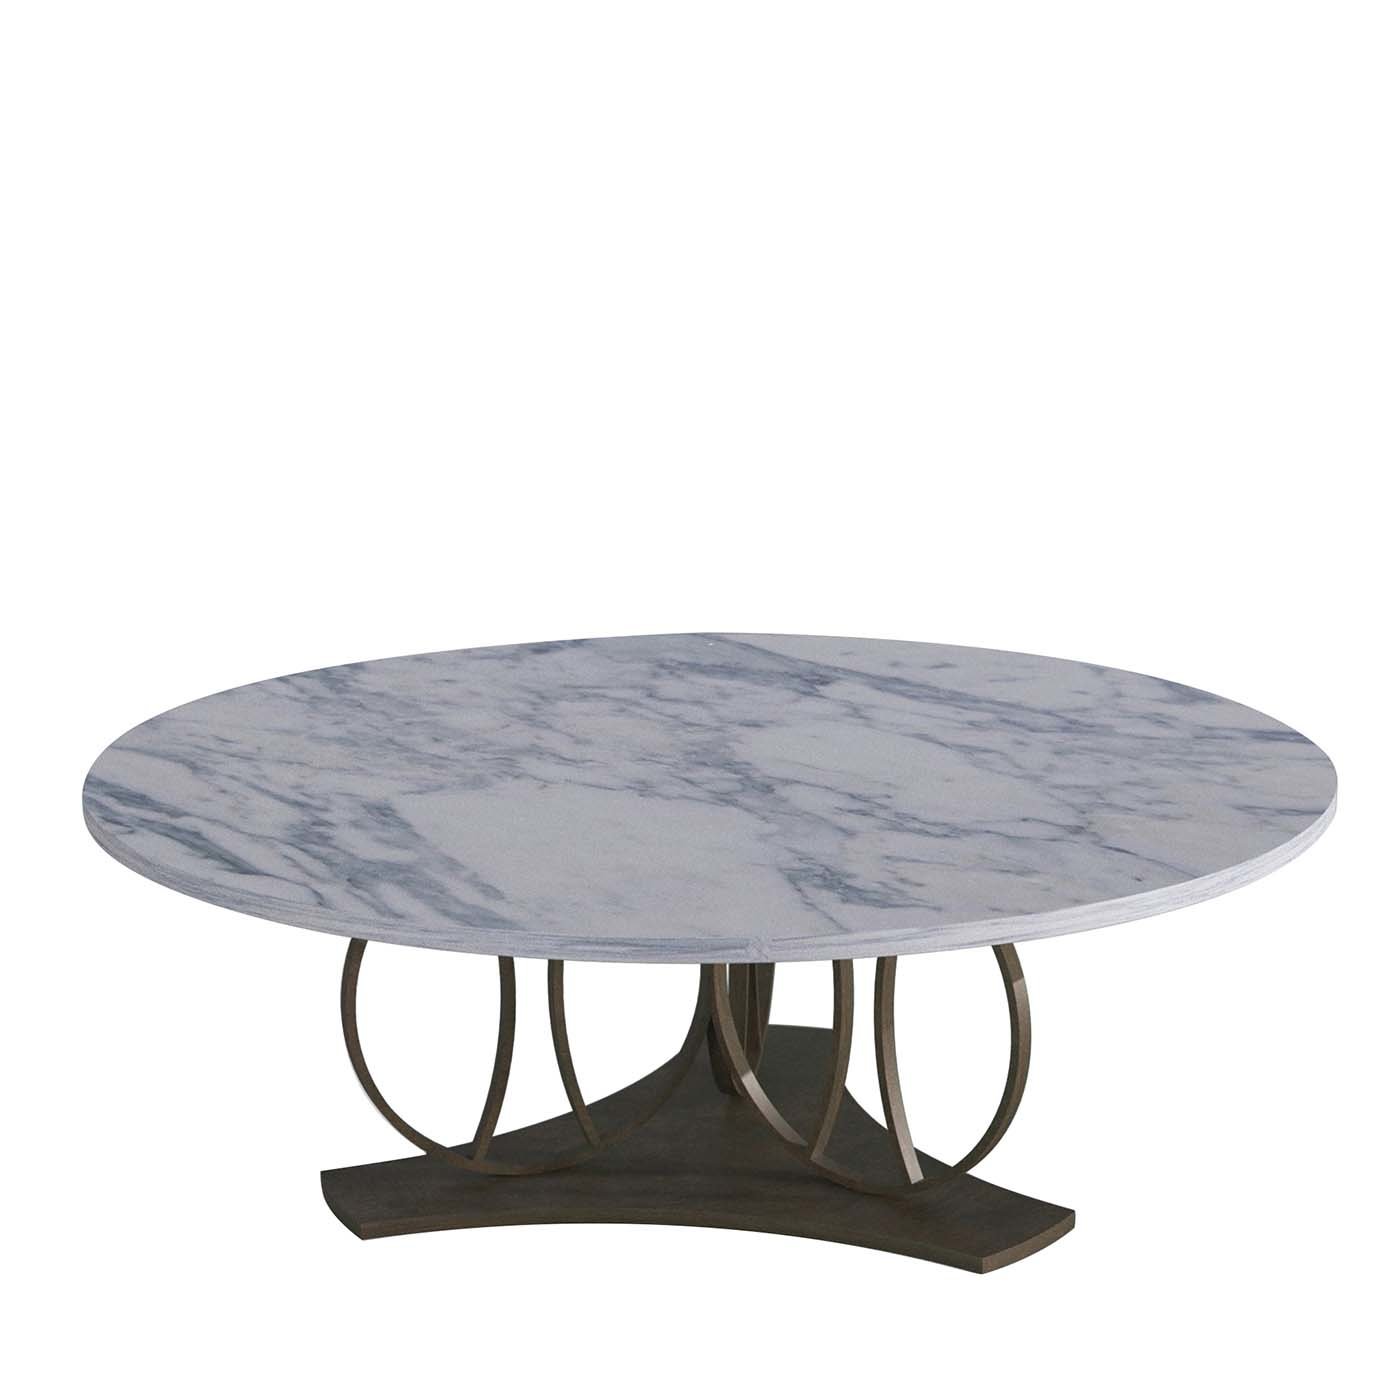 Petite table en marbre lunaire - Vue principale